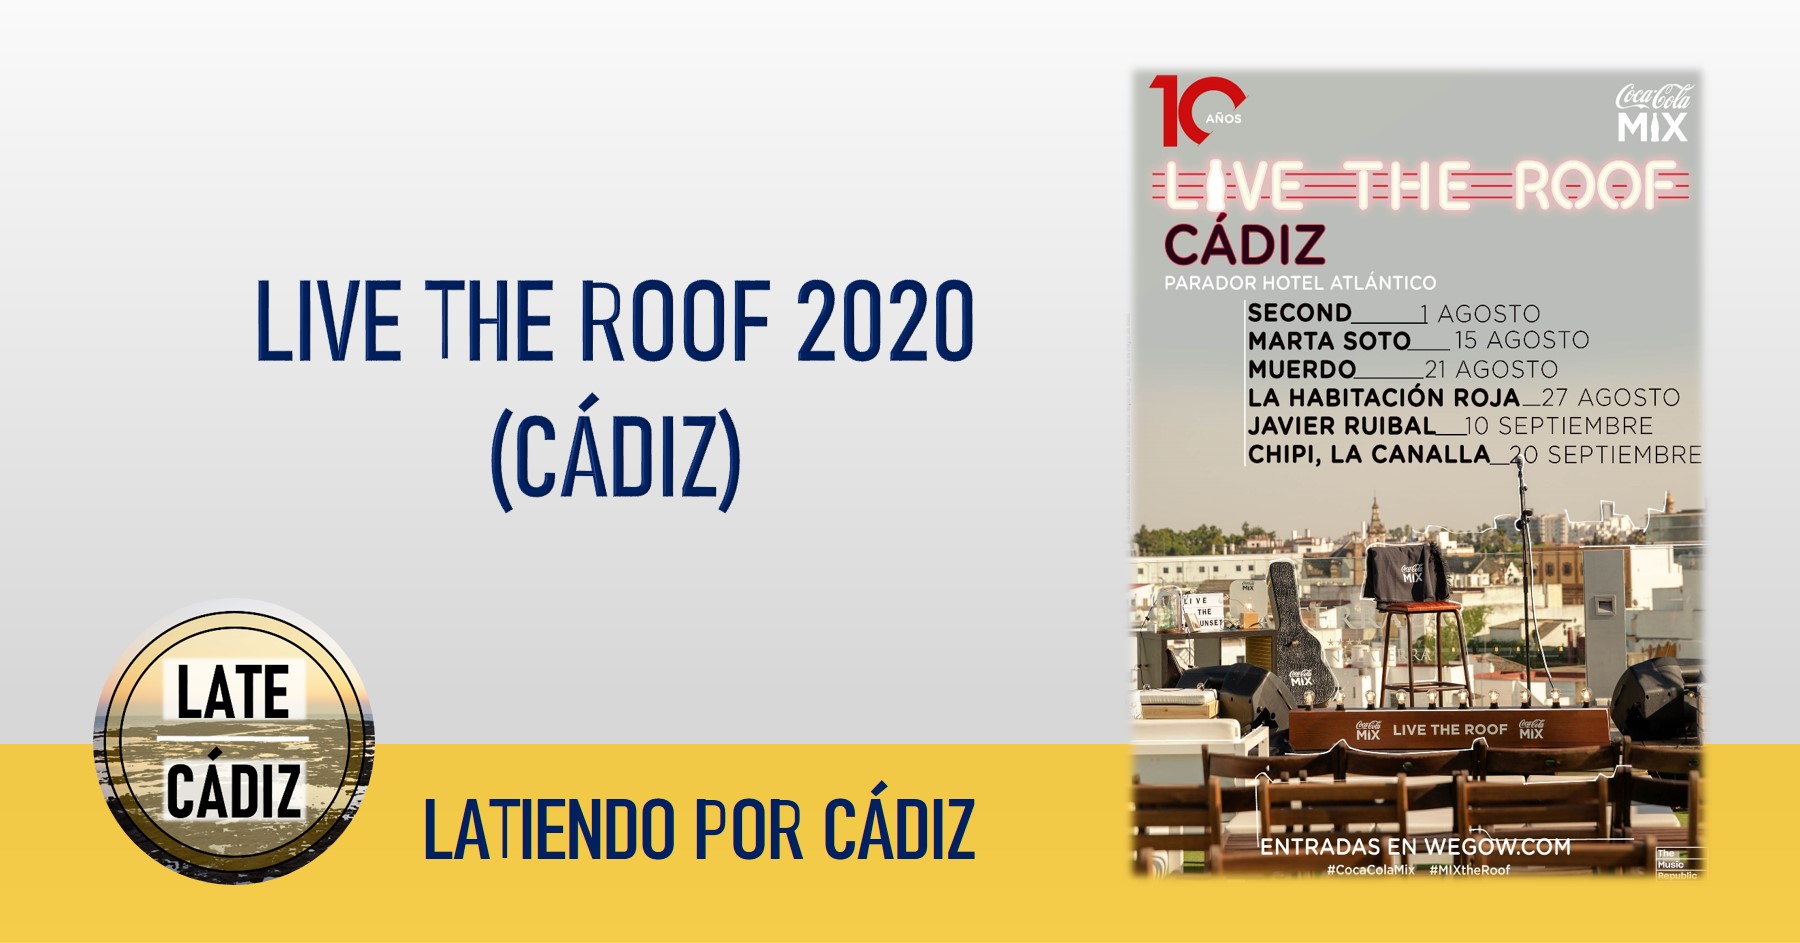 Live the Roof 2020 vuelve a Cádiz este verano